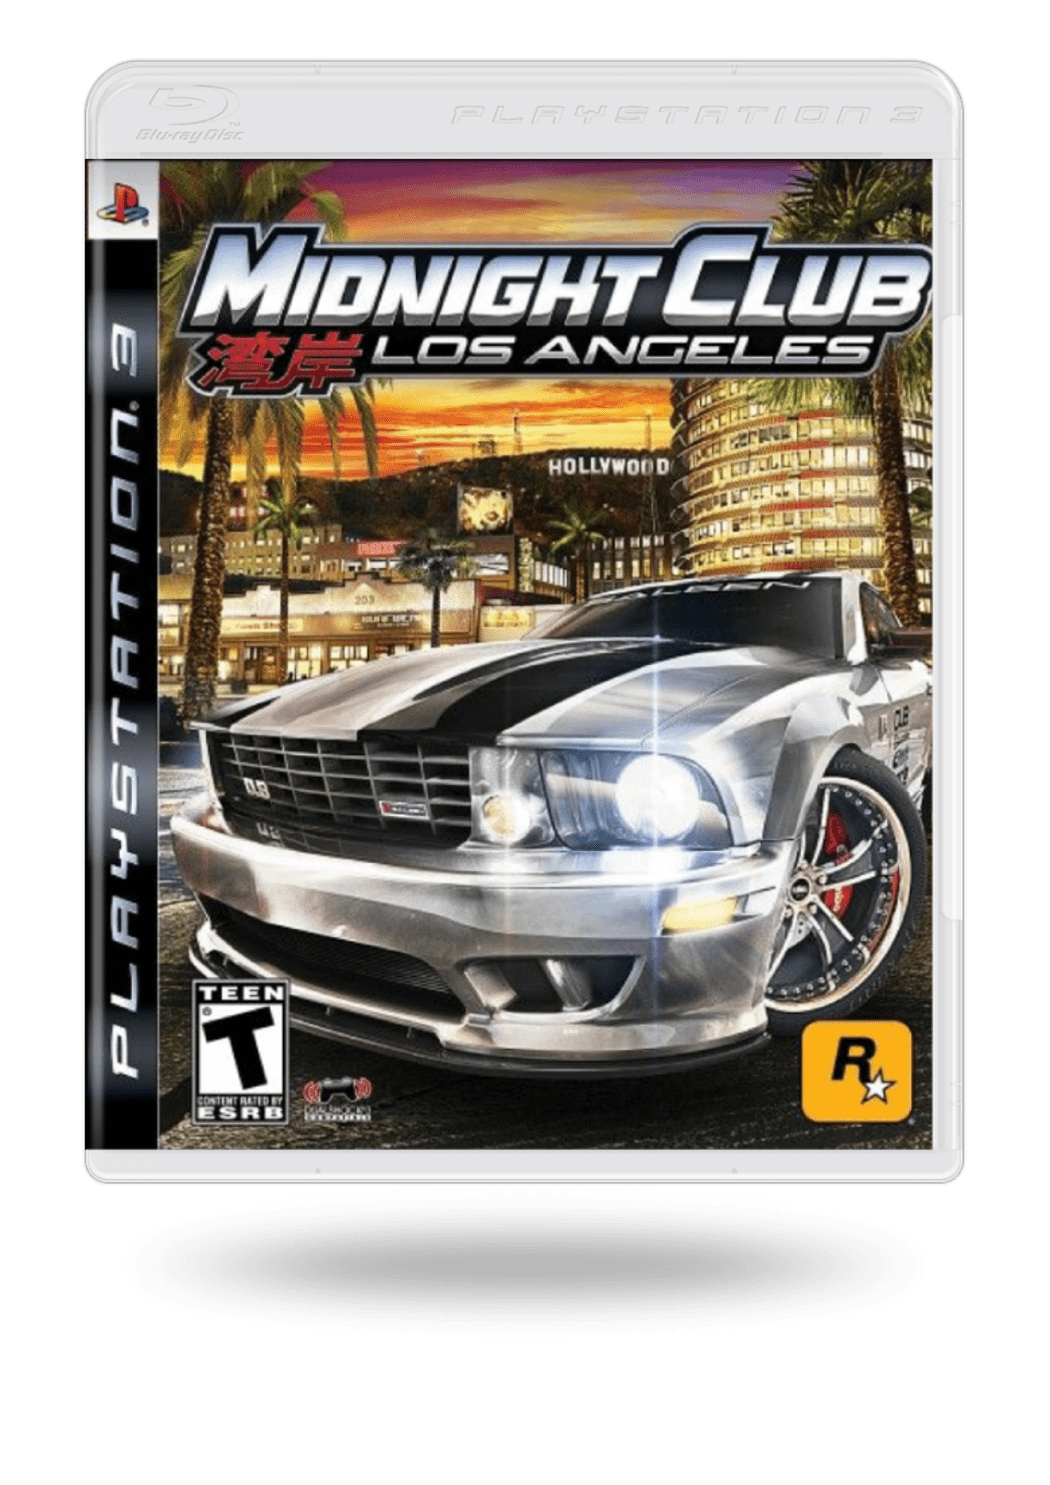 Comprar Midnight Club: LA PS3 | Segunda Mano | ENEBA